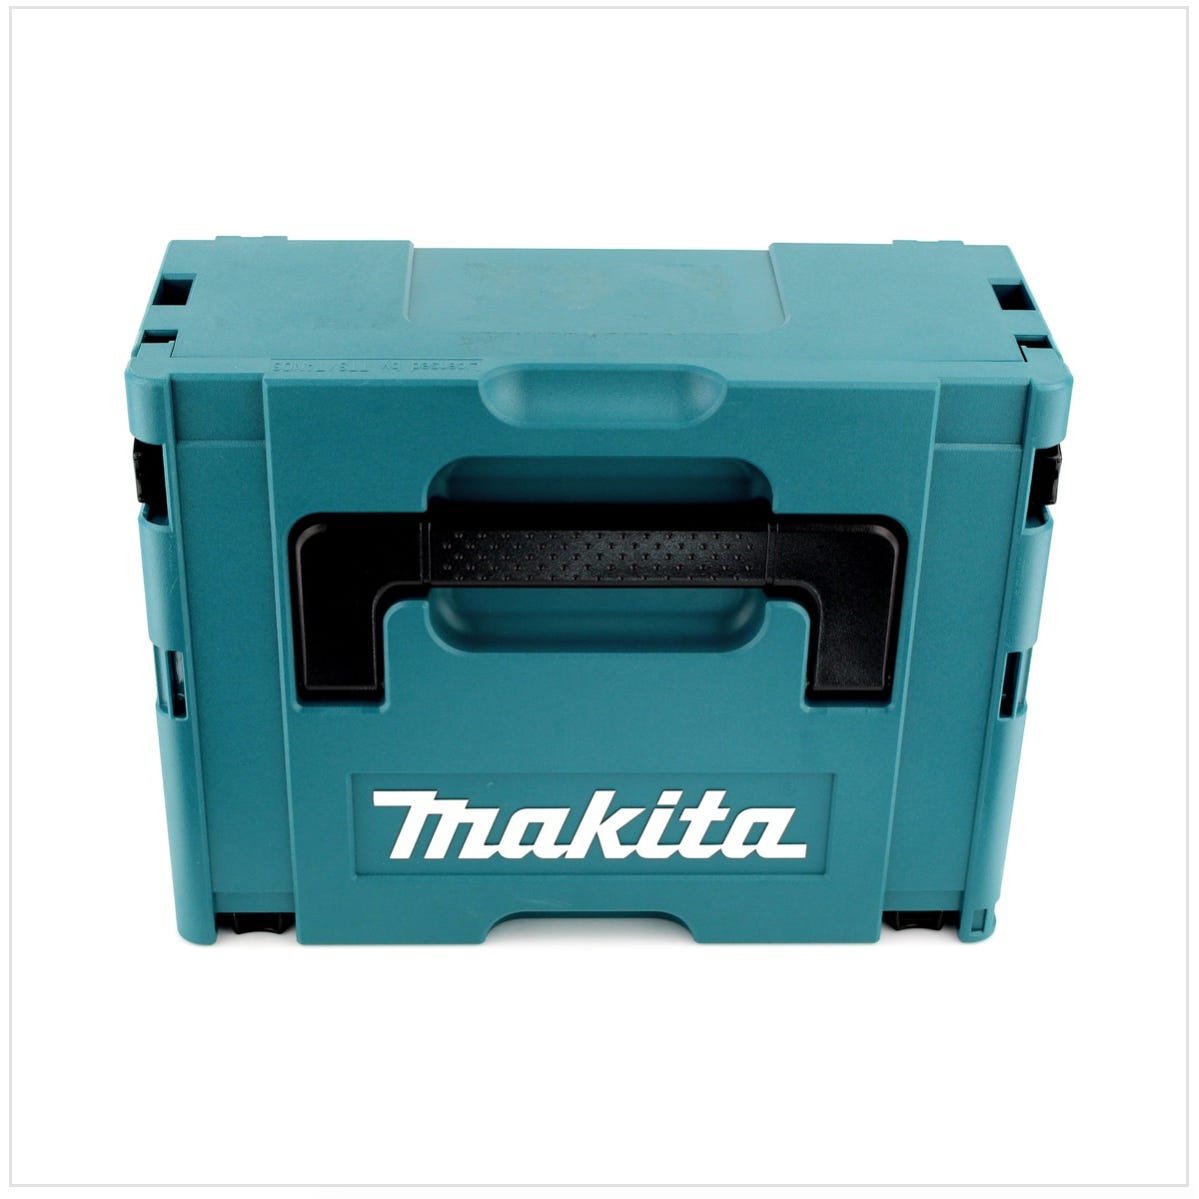 Makita DHP 483 RT1J 18 V Li-Ion Brushless Perceuse visseuse à percussion sans fil avec boîtier Makpac + 1x Batterie BL 1850 5,0 Ah + Chargeur DC18RC 2